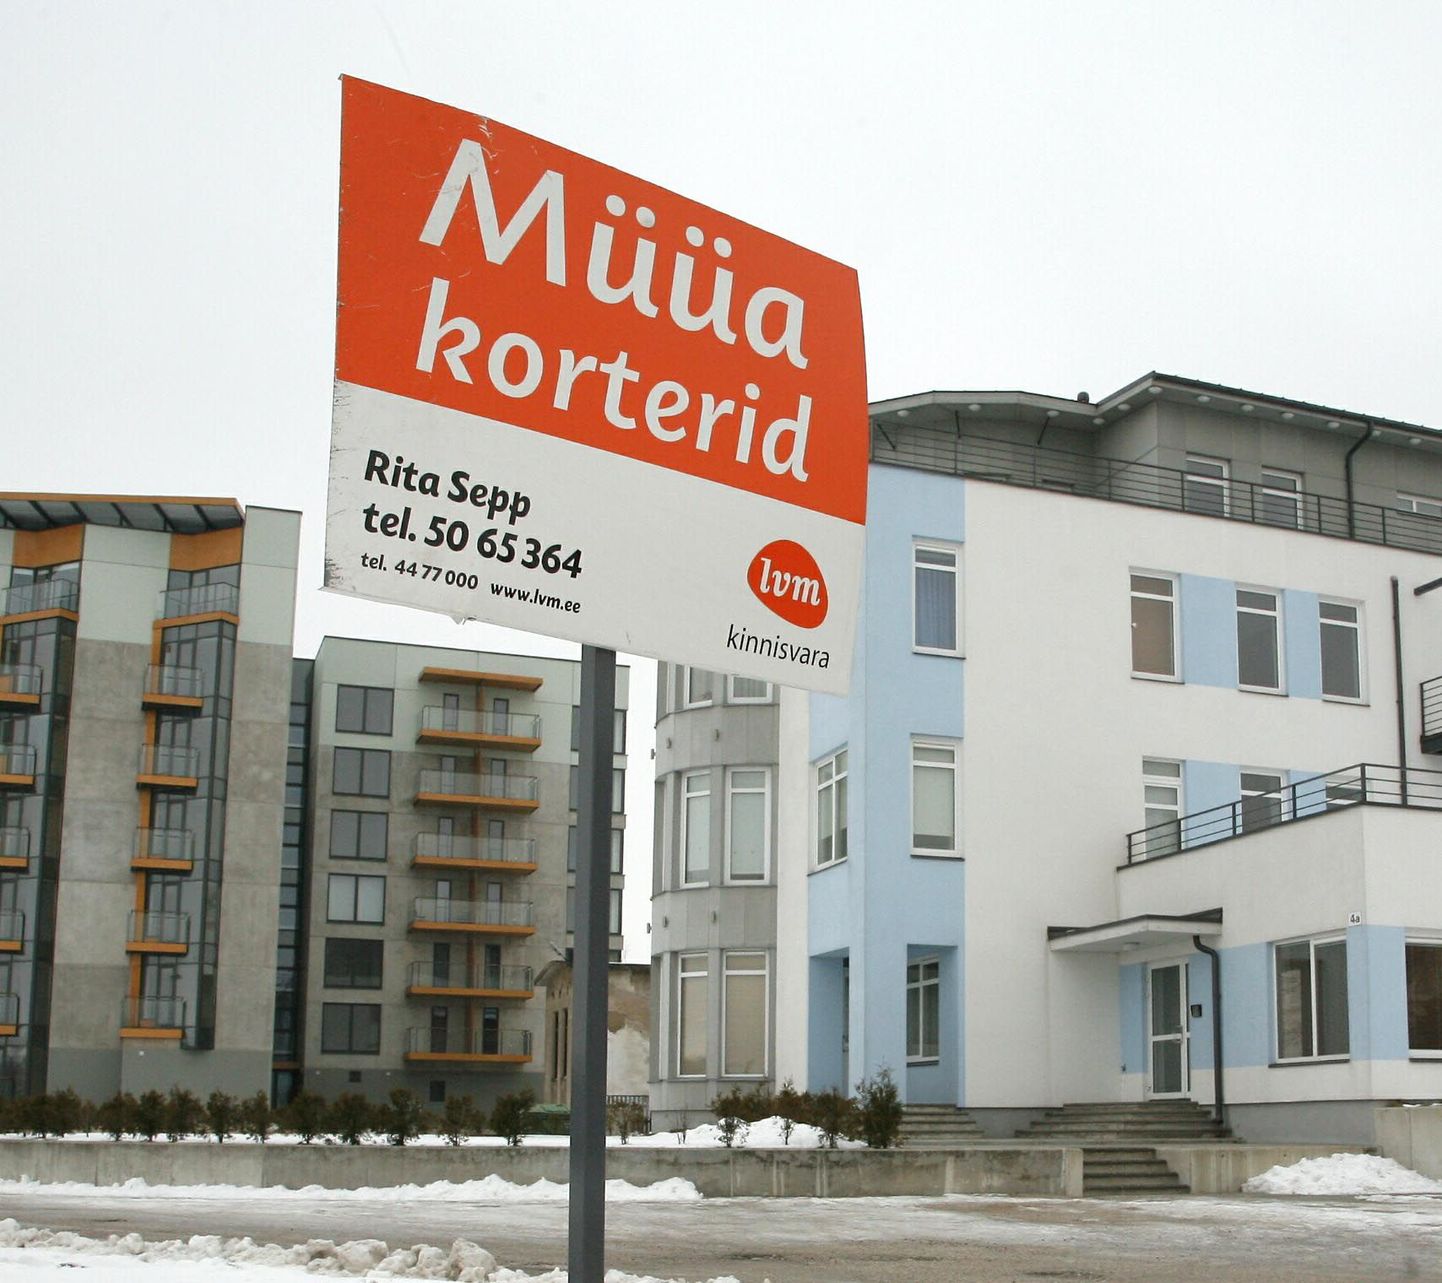 Suurematest linnadest oli veebruarikuus
korterite hinnalangus suurim Pärnus.